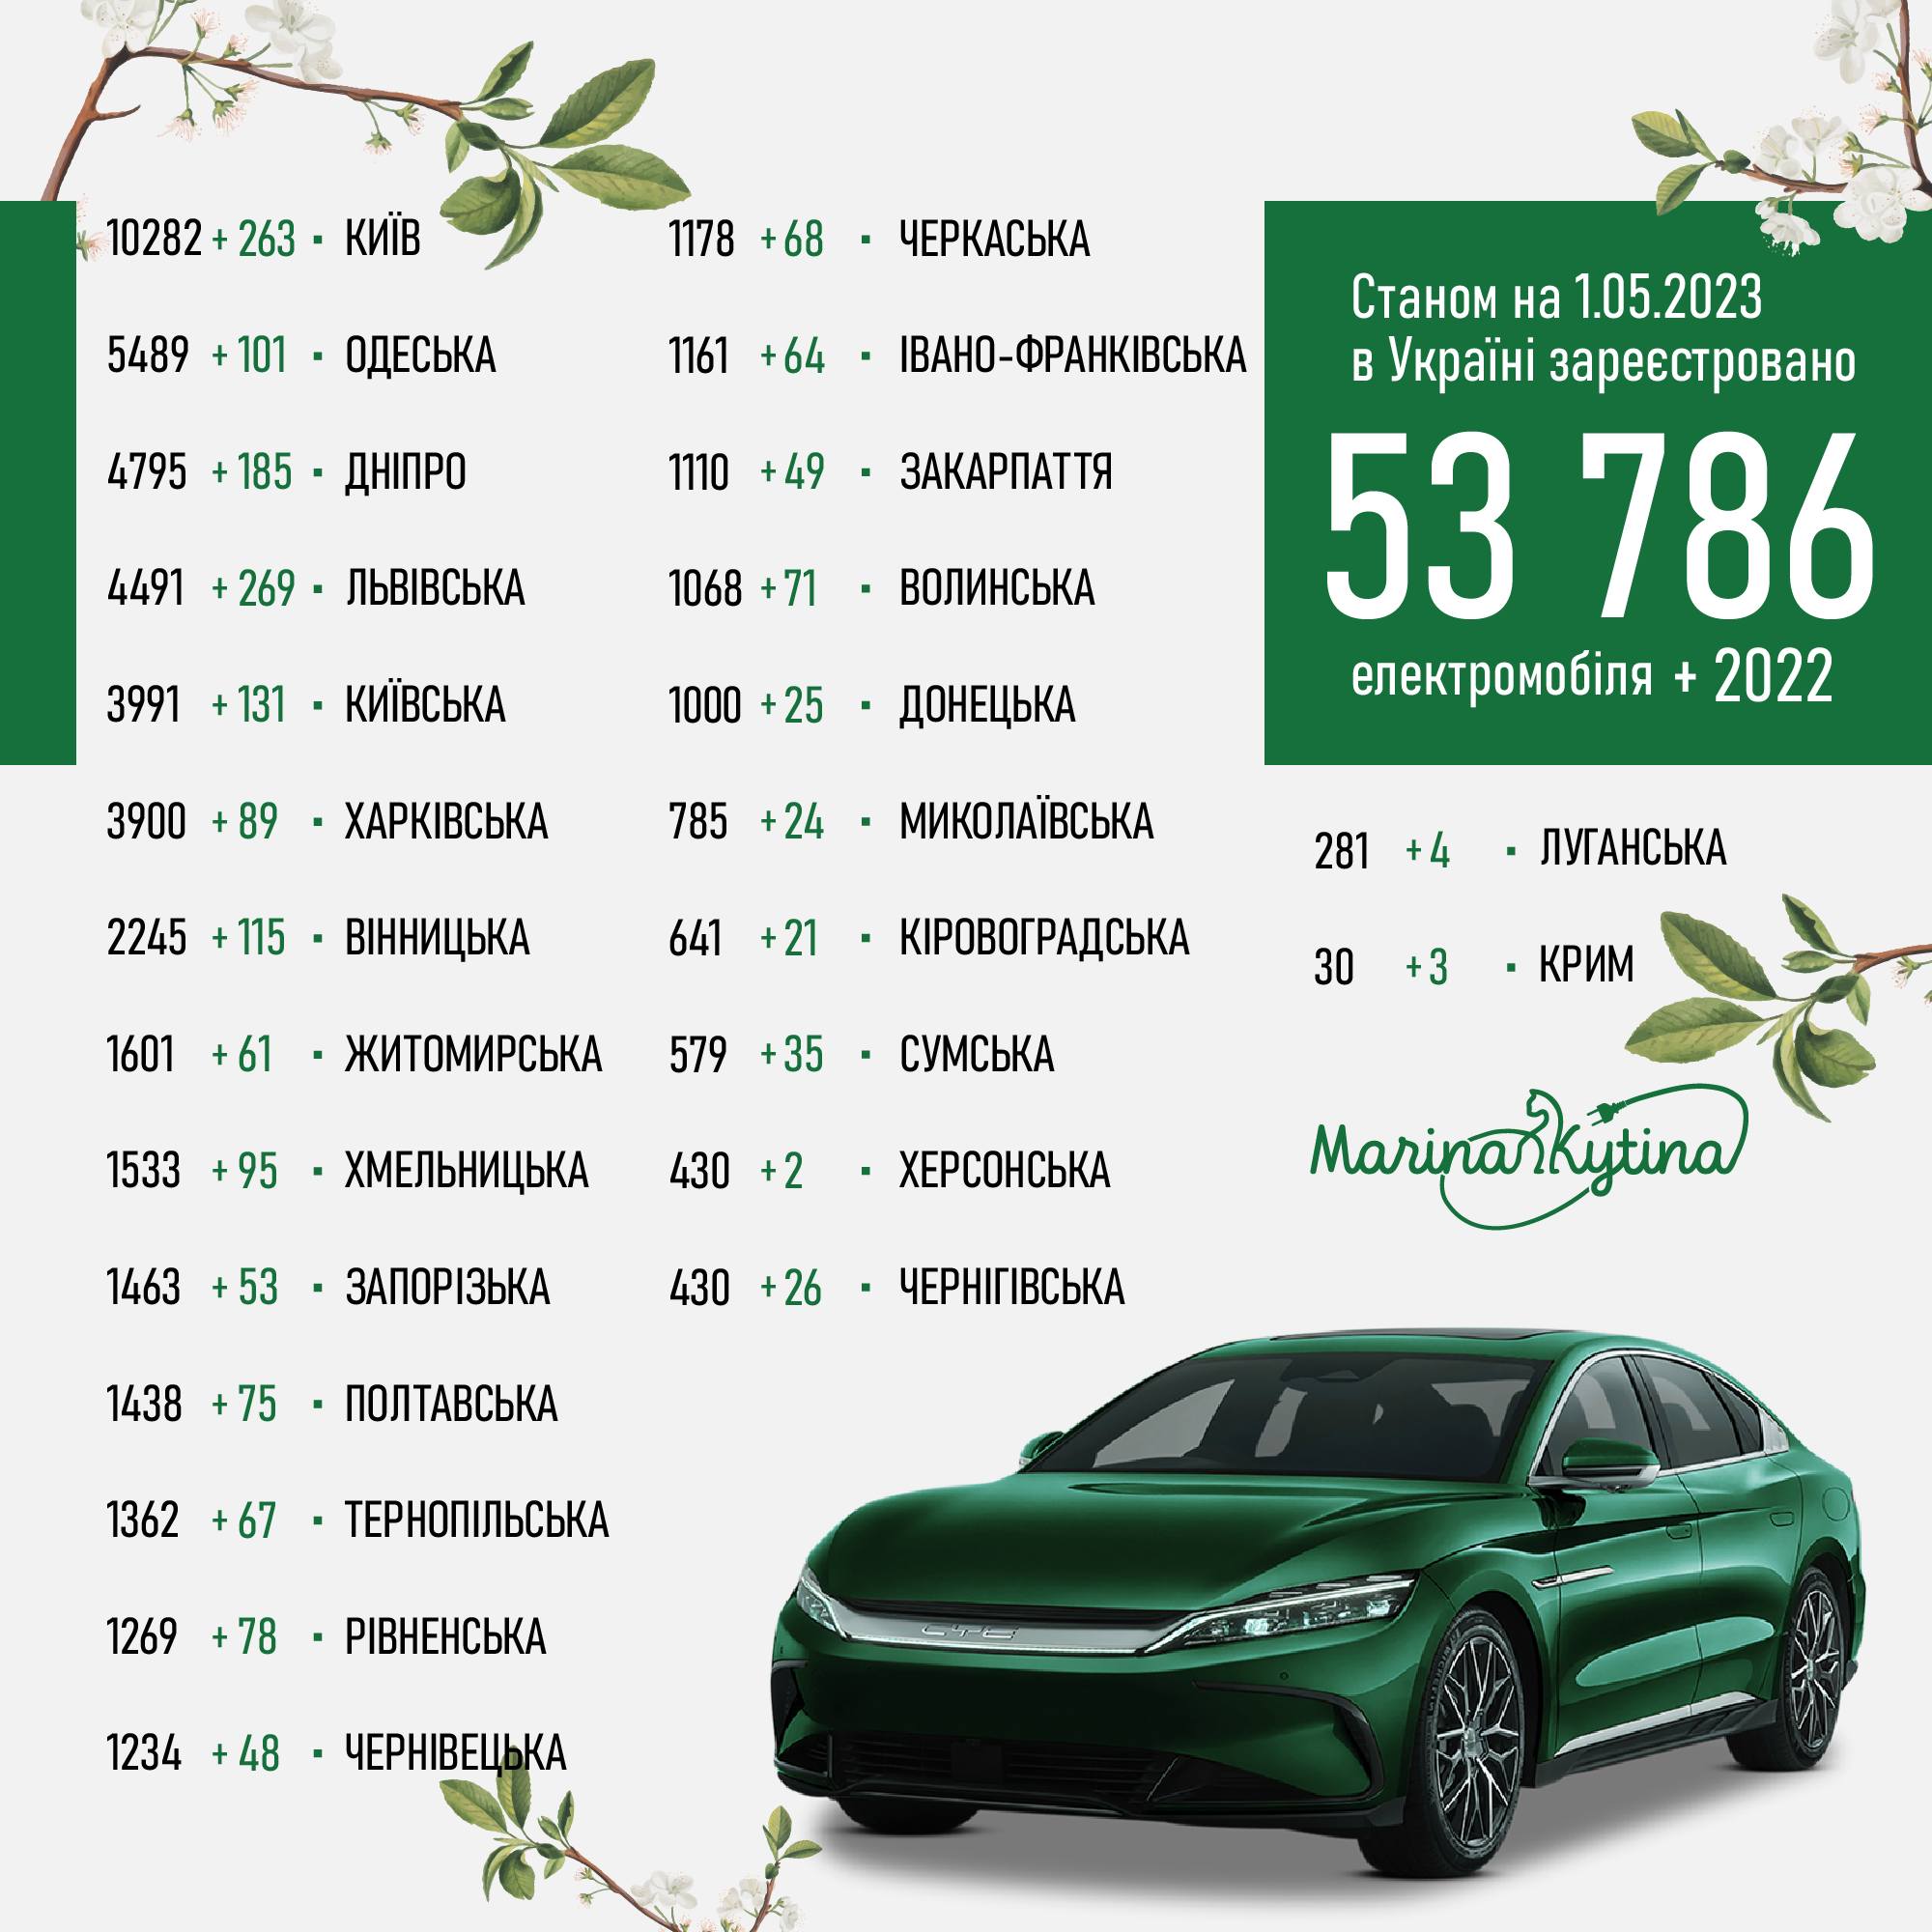 2022 електромобілі купили українці в квітні, загалом наш е-парк нараховує 53 786 авто 